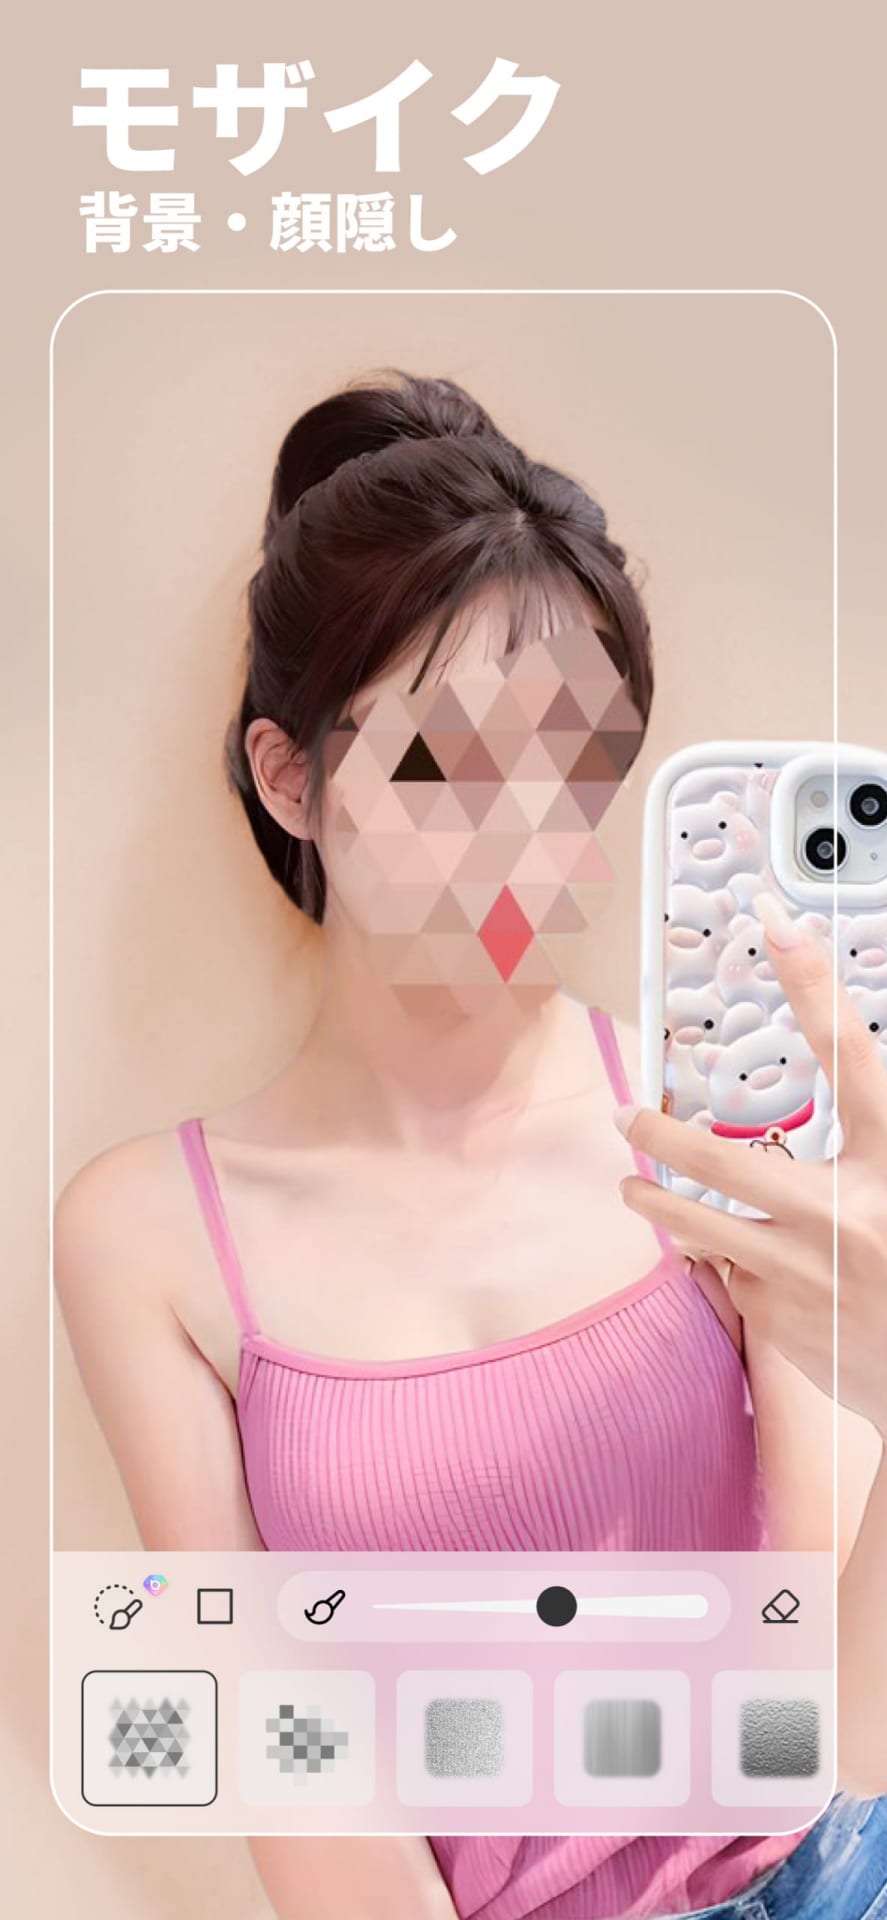 メンズのマッチングアプリのプロフィール写真作成にぴったりのアプリ「BeautyPlus」